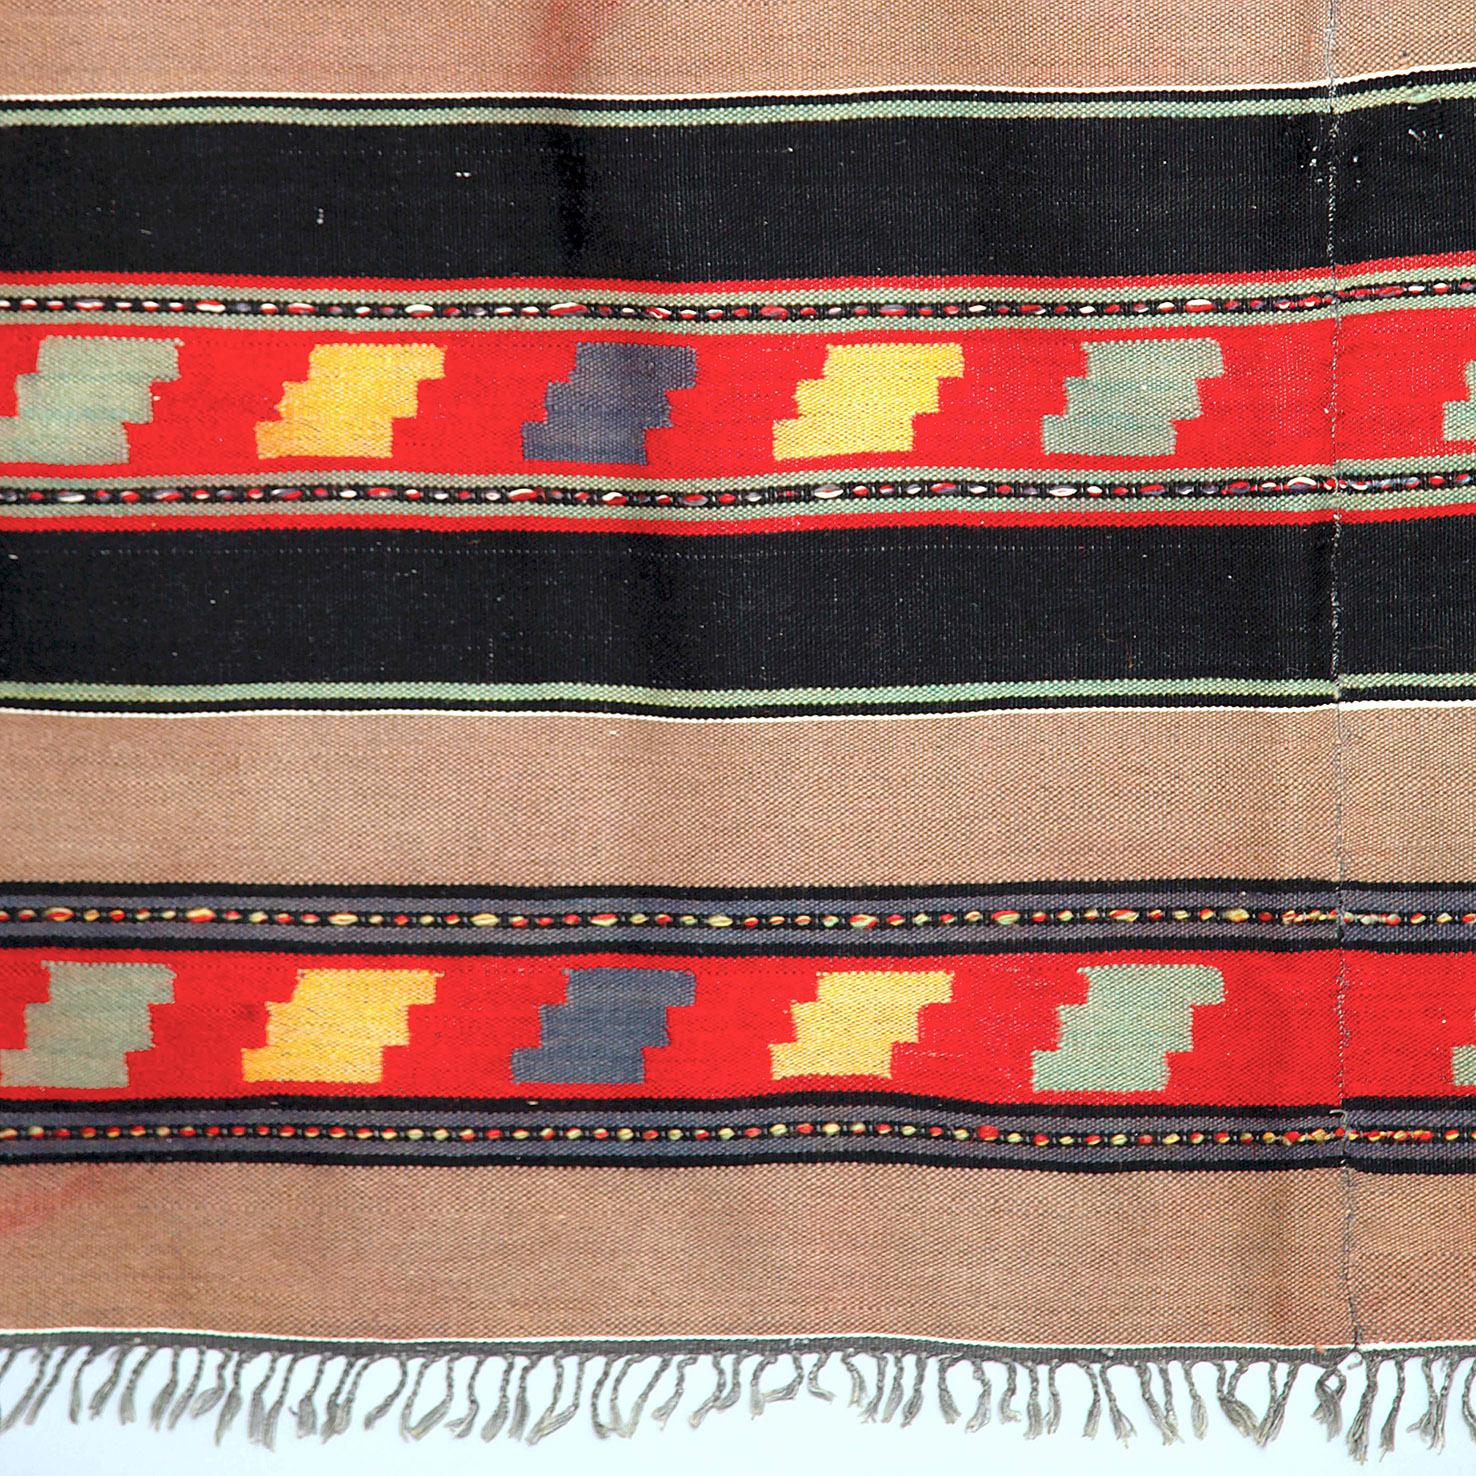 Ein handgefertigter Wollteppich in Schwarz und Braun, sowohl mit Streifen als auch mit geometrischen Mustern.
Dieser Teppich hat ein auffälliges Muster in Rot-, Gelb-, Blau- und Grüntönen, und obwohl er im Vintage-Look gehalten ist, lässt er sich